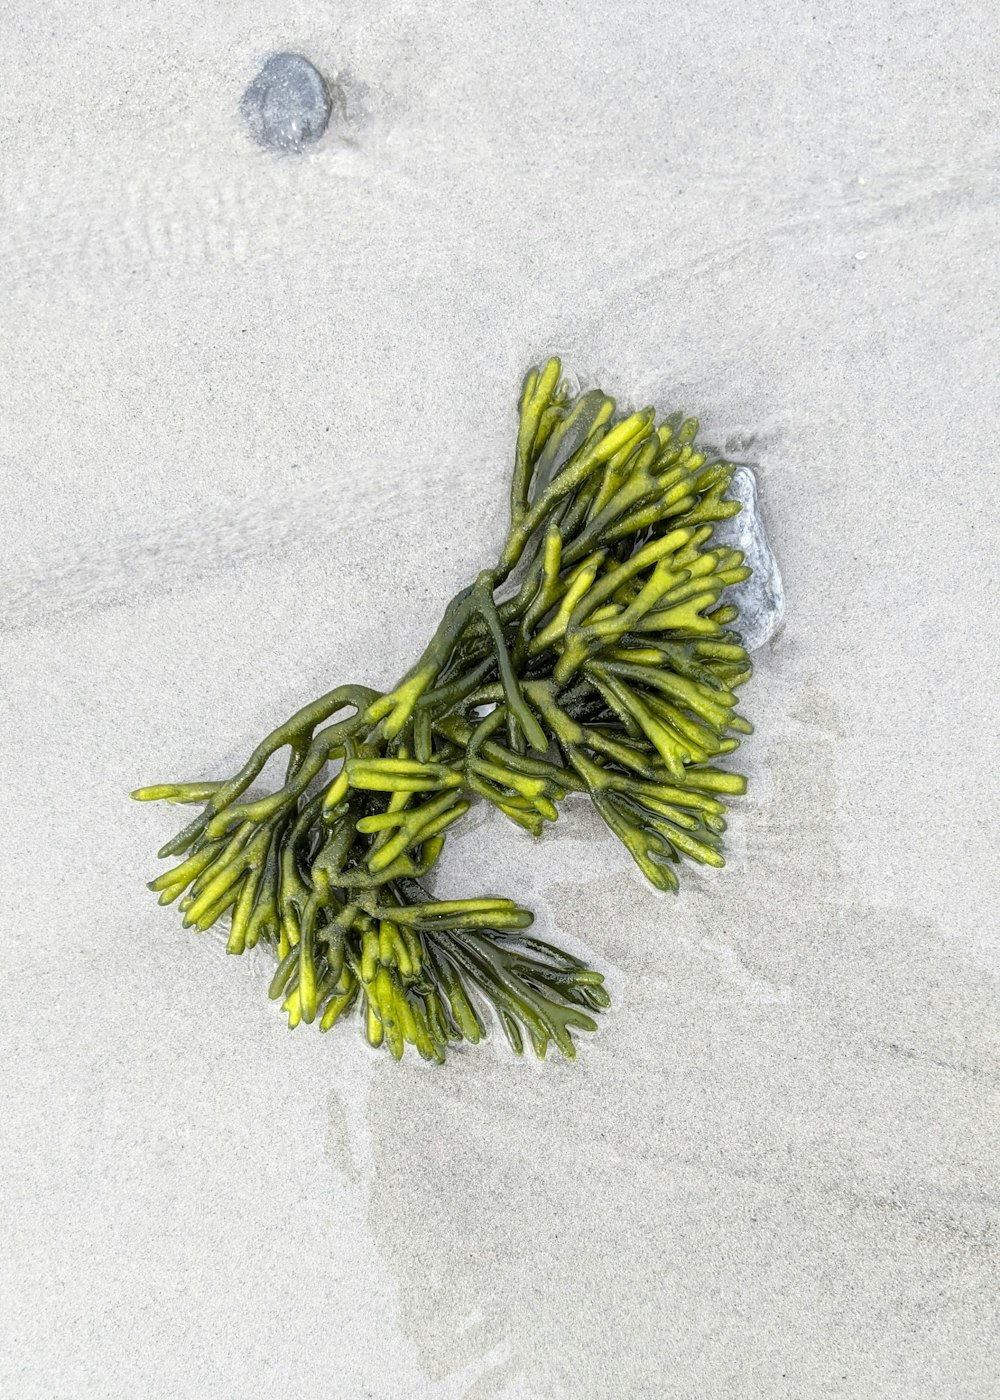 um monte de algas marinhas deitadas na areia